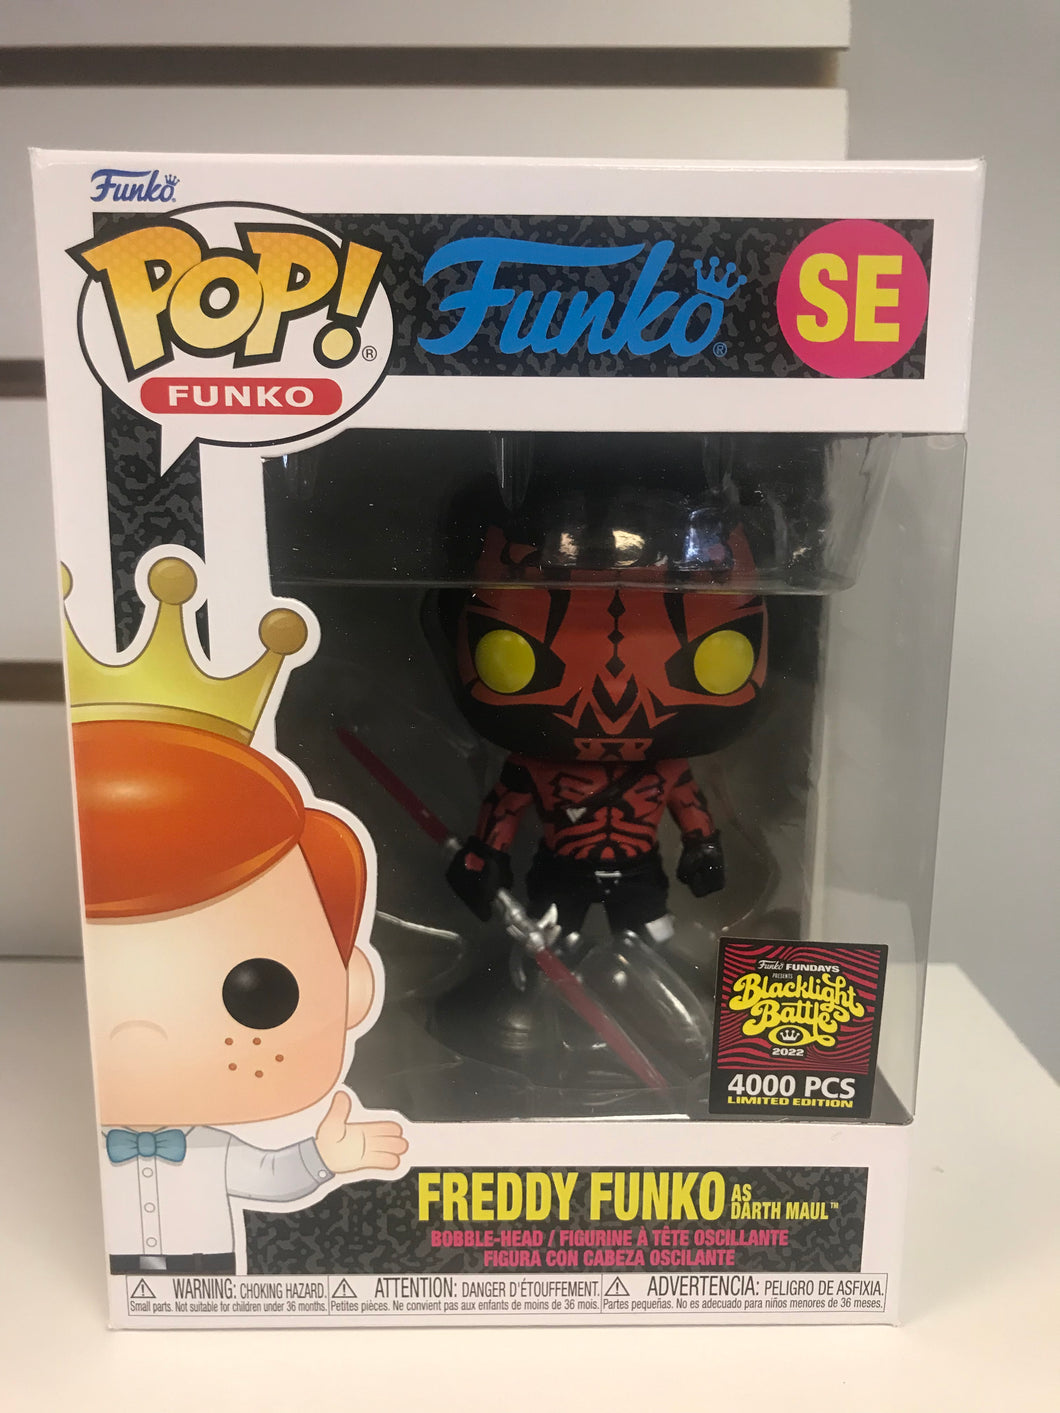 Funko Pop Freddy Funko as Darth Maul